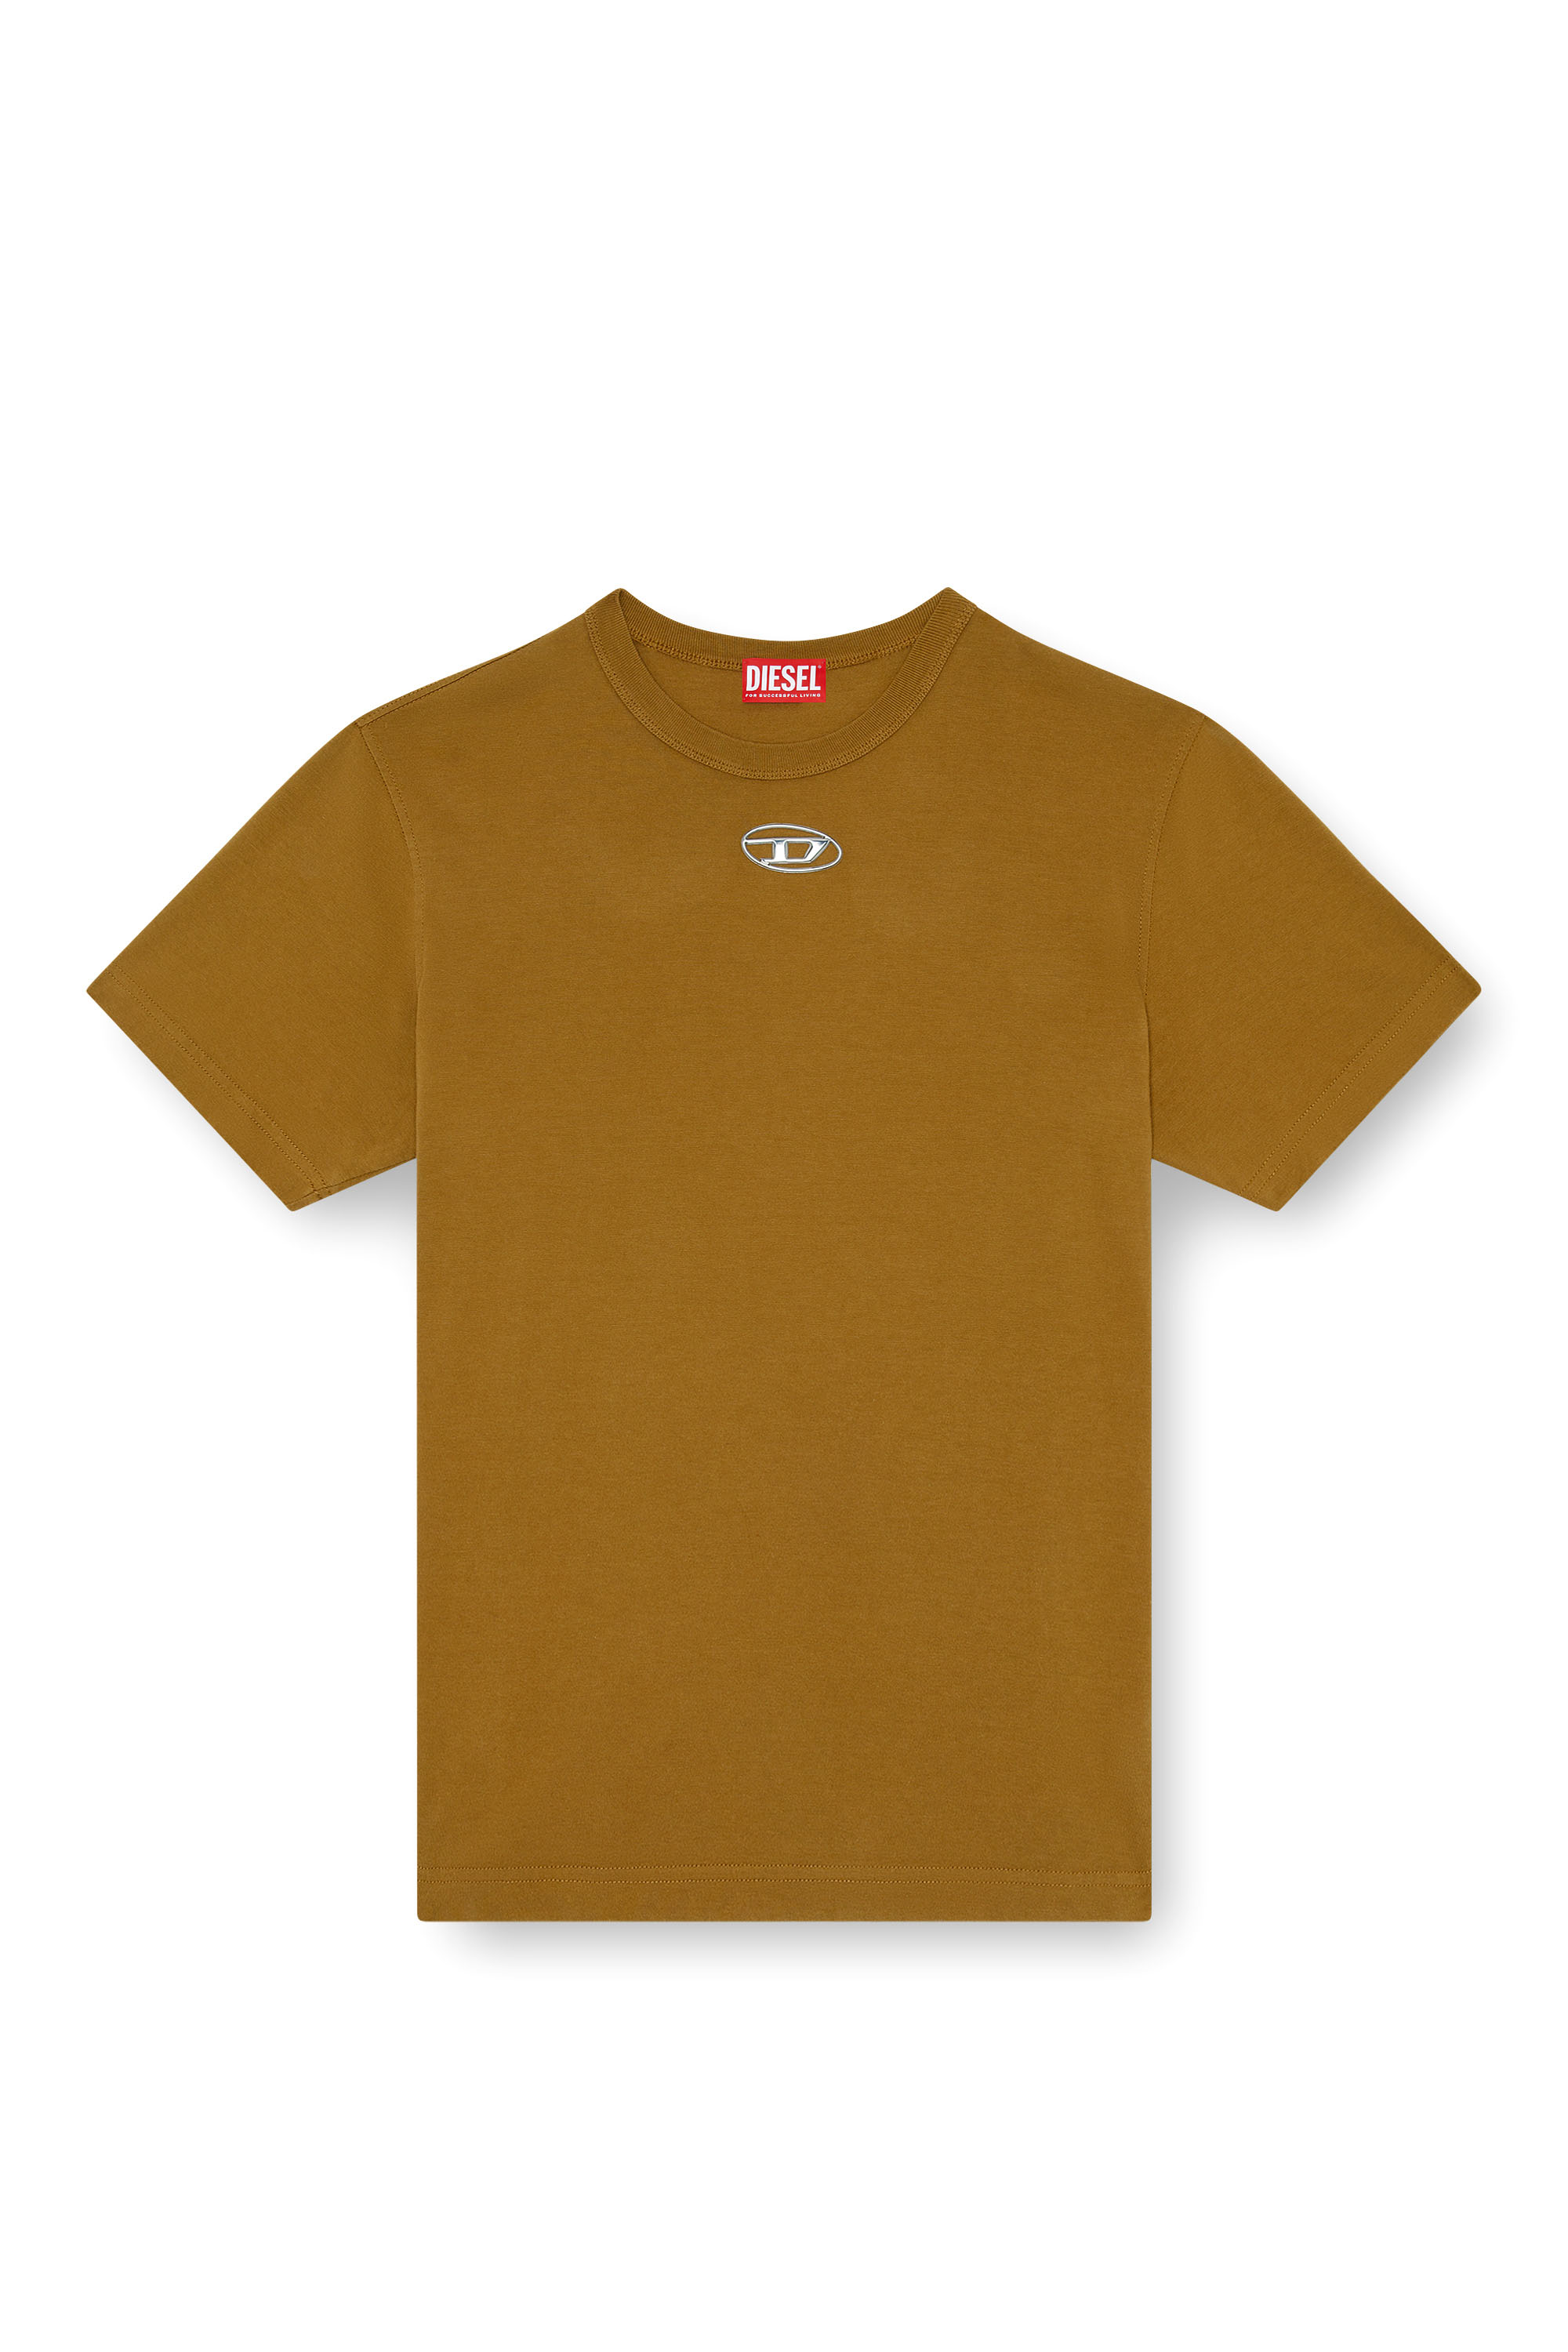 Diesel - T-JUST-OD, Homme T-shirt avec logo moulé par injection in Marron - Image 3